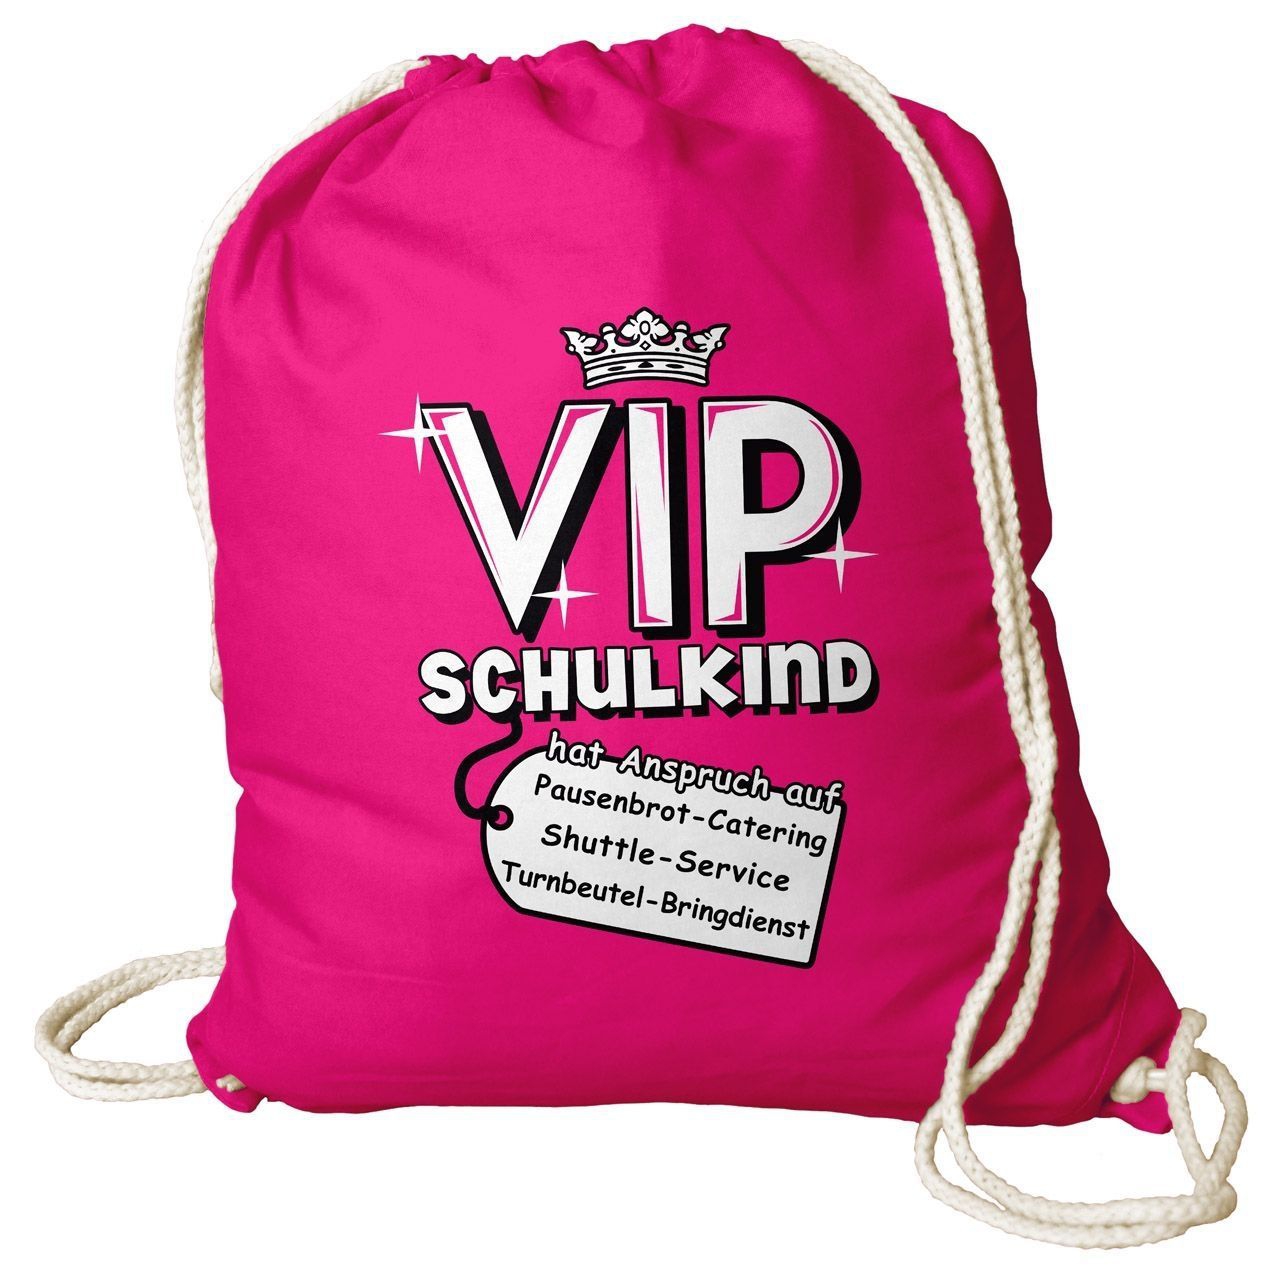 VIP Schulkind Rucksack Beutel pink